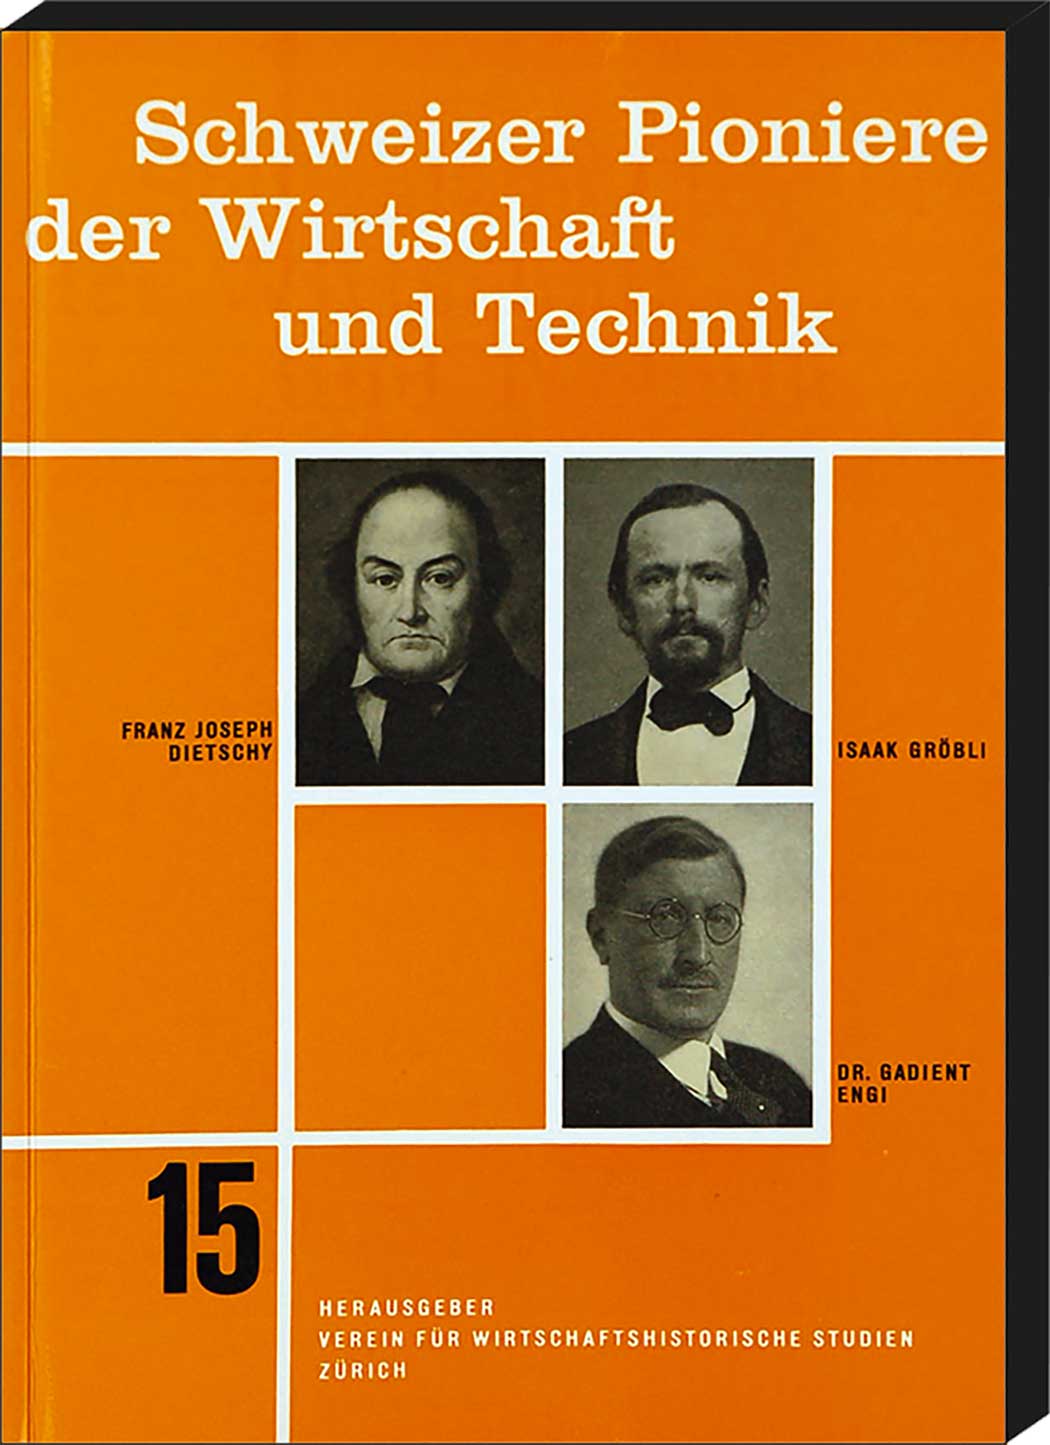  - Schweizer Pioniere der Wirtschaft und Technik, Band 15: Franz Joseph Dietschy 1770-1842 / Isaak Grbli 1822-1917 / Dr. Gadient Engi 1881-1945.